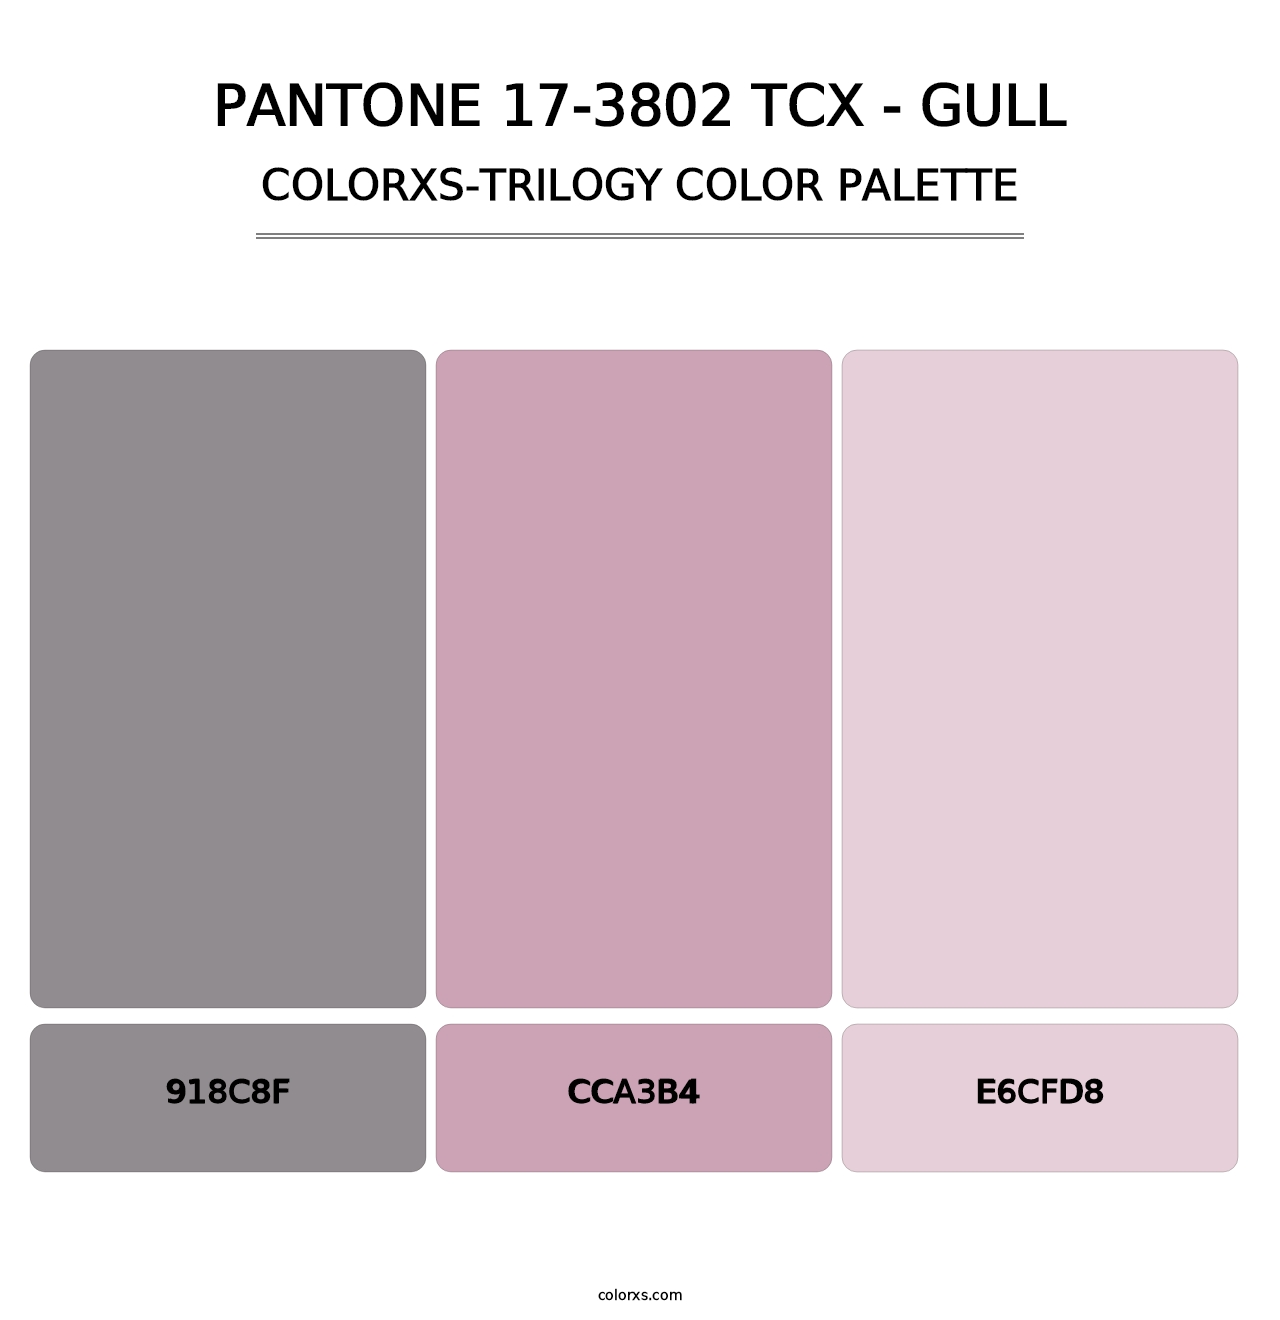 PANTONE 17-3802 TCX - Gull - Colorxs Trilogy Palette